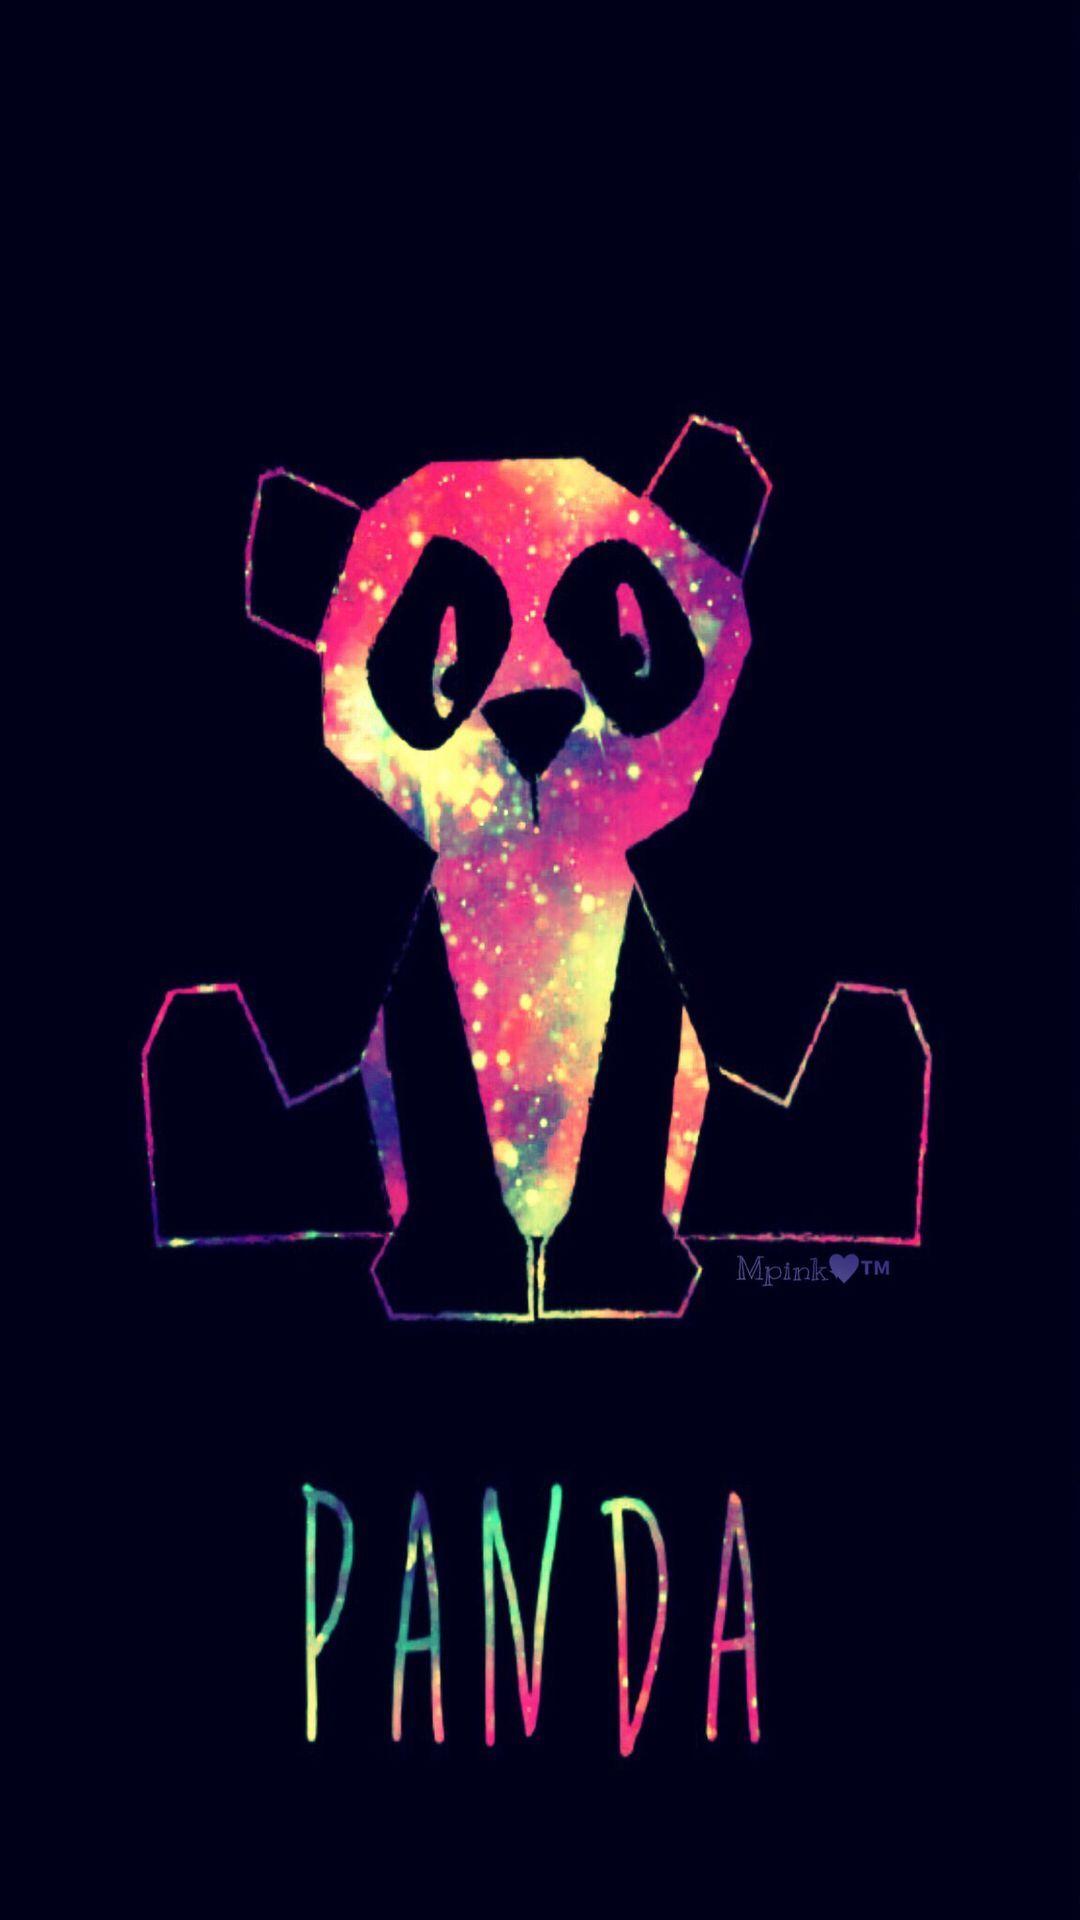 Neon Panda Galaxy Wallpaper #androidwallpaper #iphonewallpaper